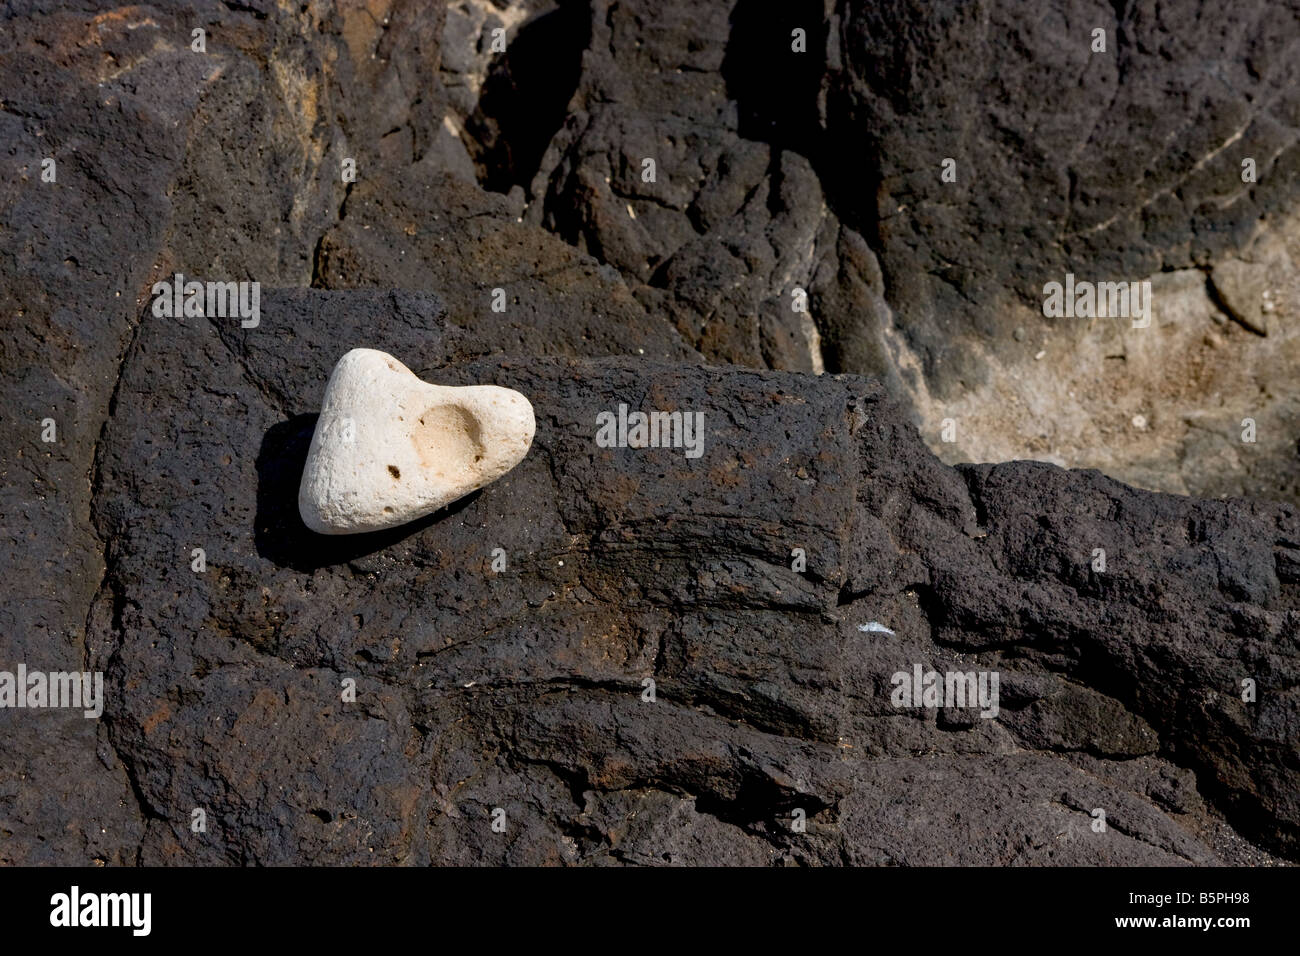 White rock found on black lava rock on Kauai Stock Photo